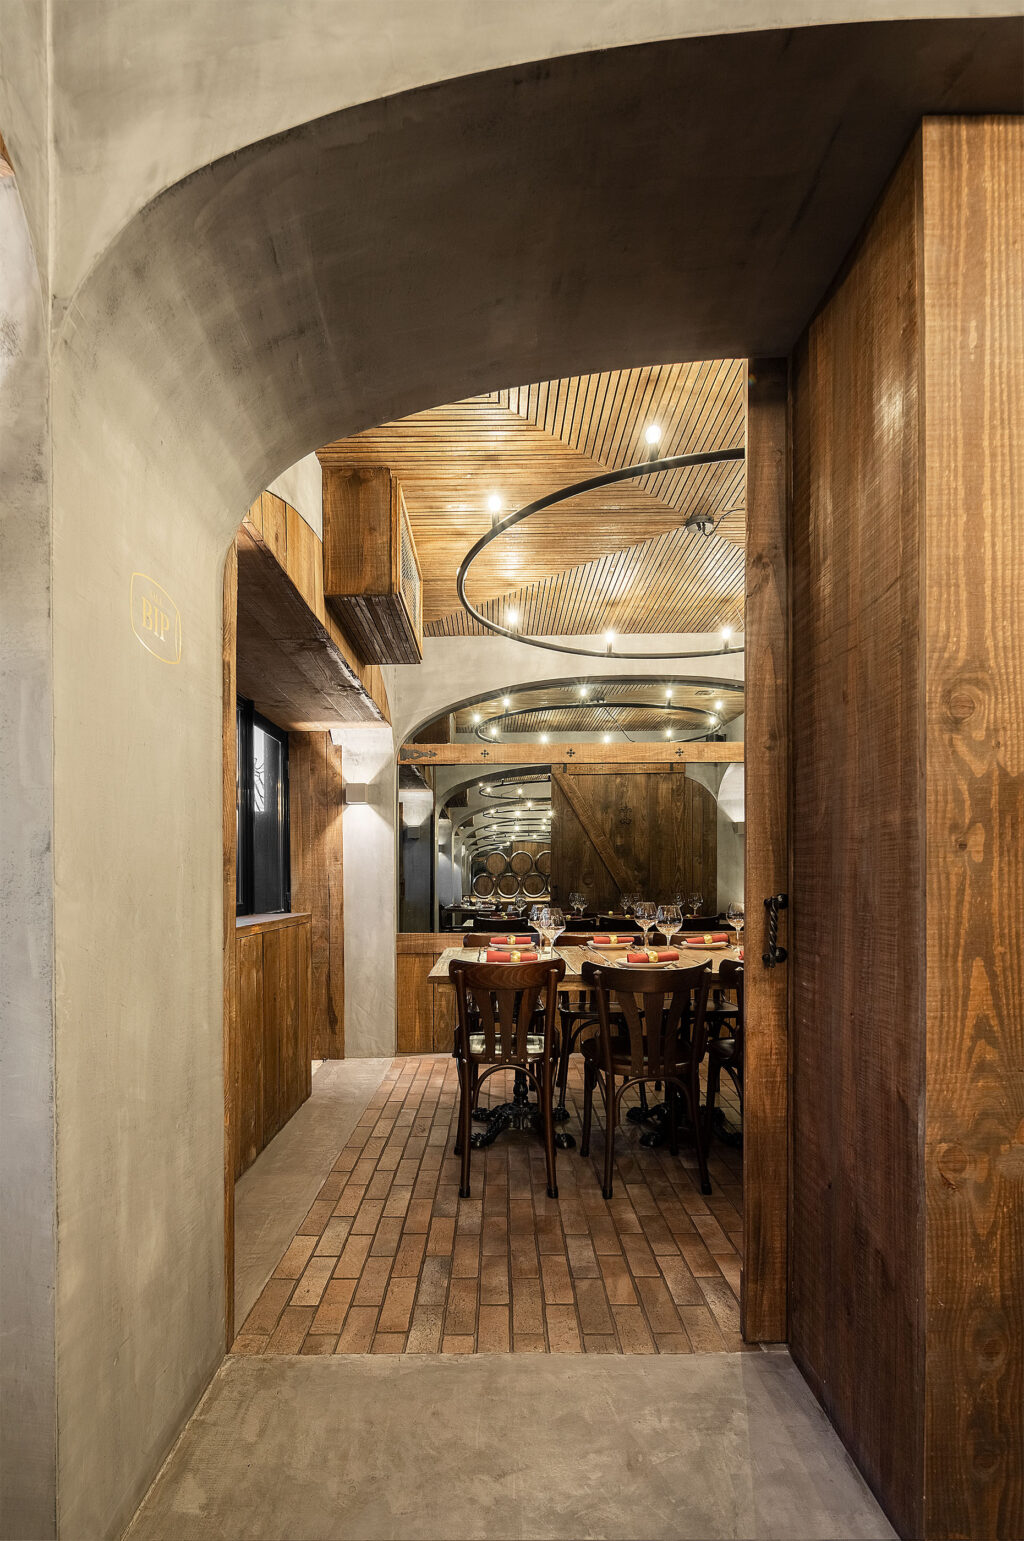 Pengalaman unik dalam suasana ruang bawah tanah. restoran BARRIL. Arsitek PAULO MERLINI